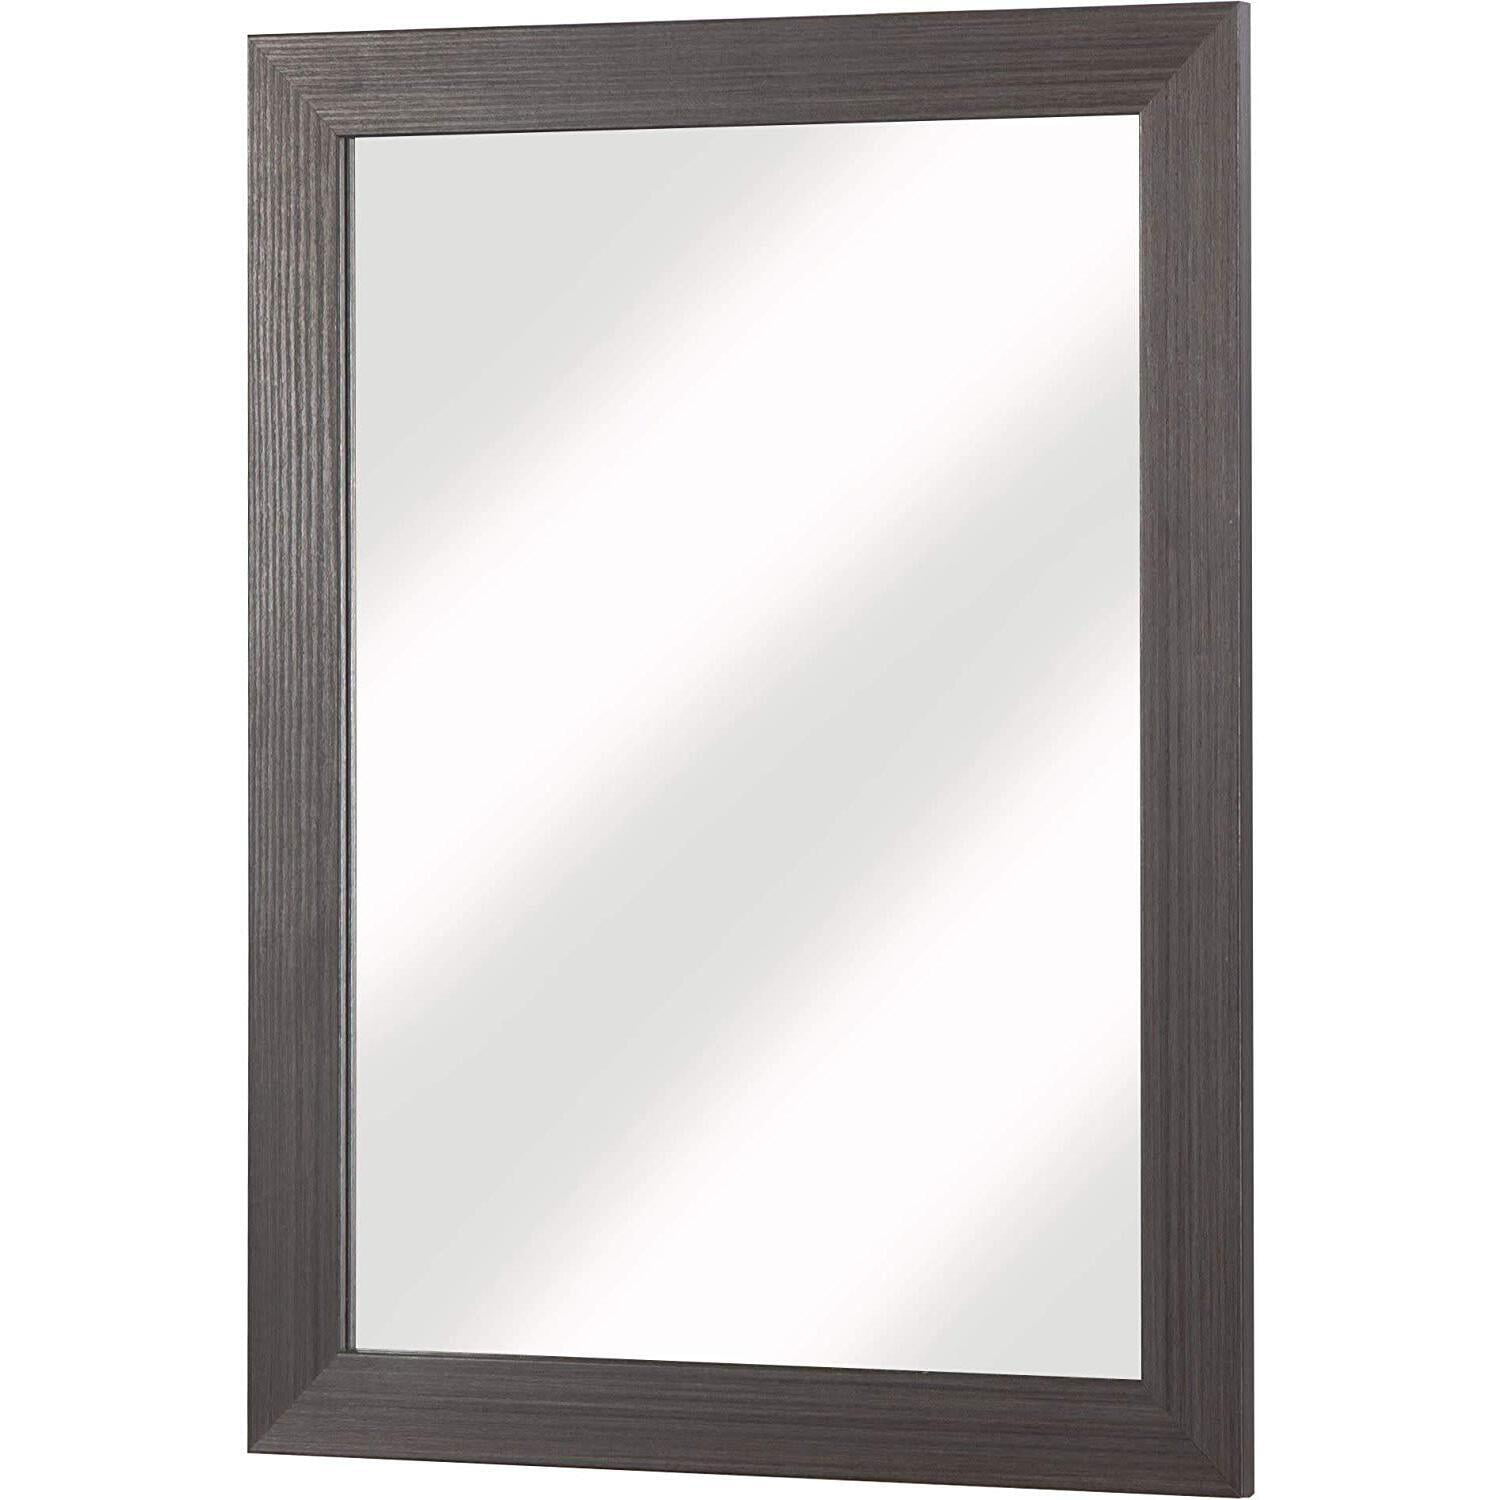 Light Grey Headwest 8004 Wall Mirror 26.5 x 32.5